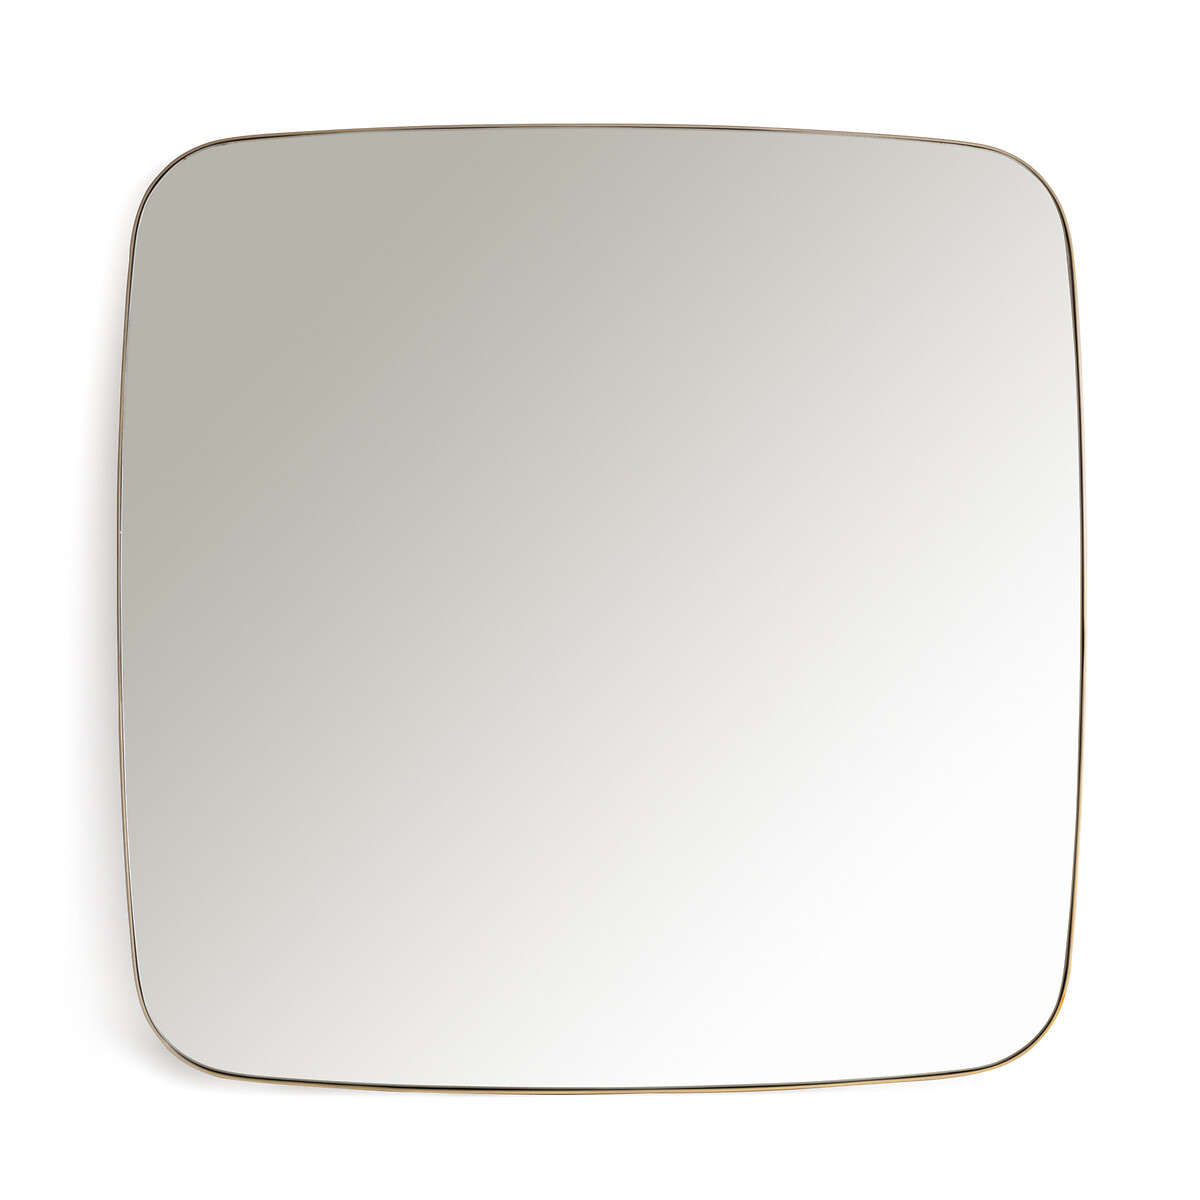 Зеркало квадратное с отделкой металлом В90 см Iodus единый размер желтый зеркало круглое с отделкой металлом 90 см iodus единый размер черный